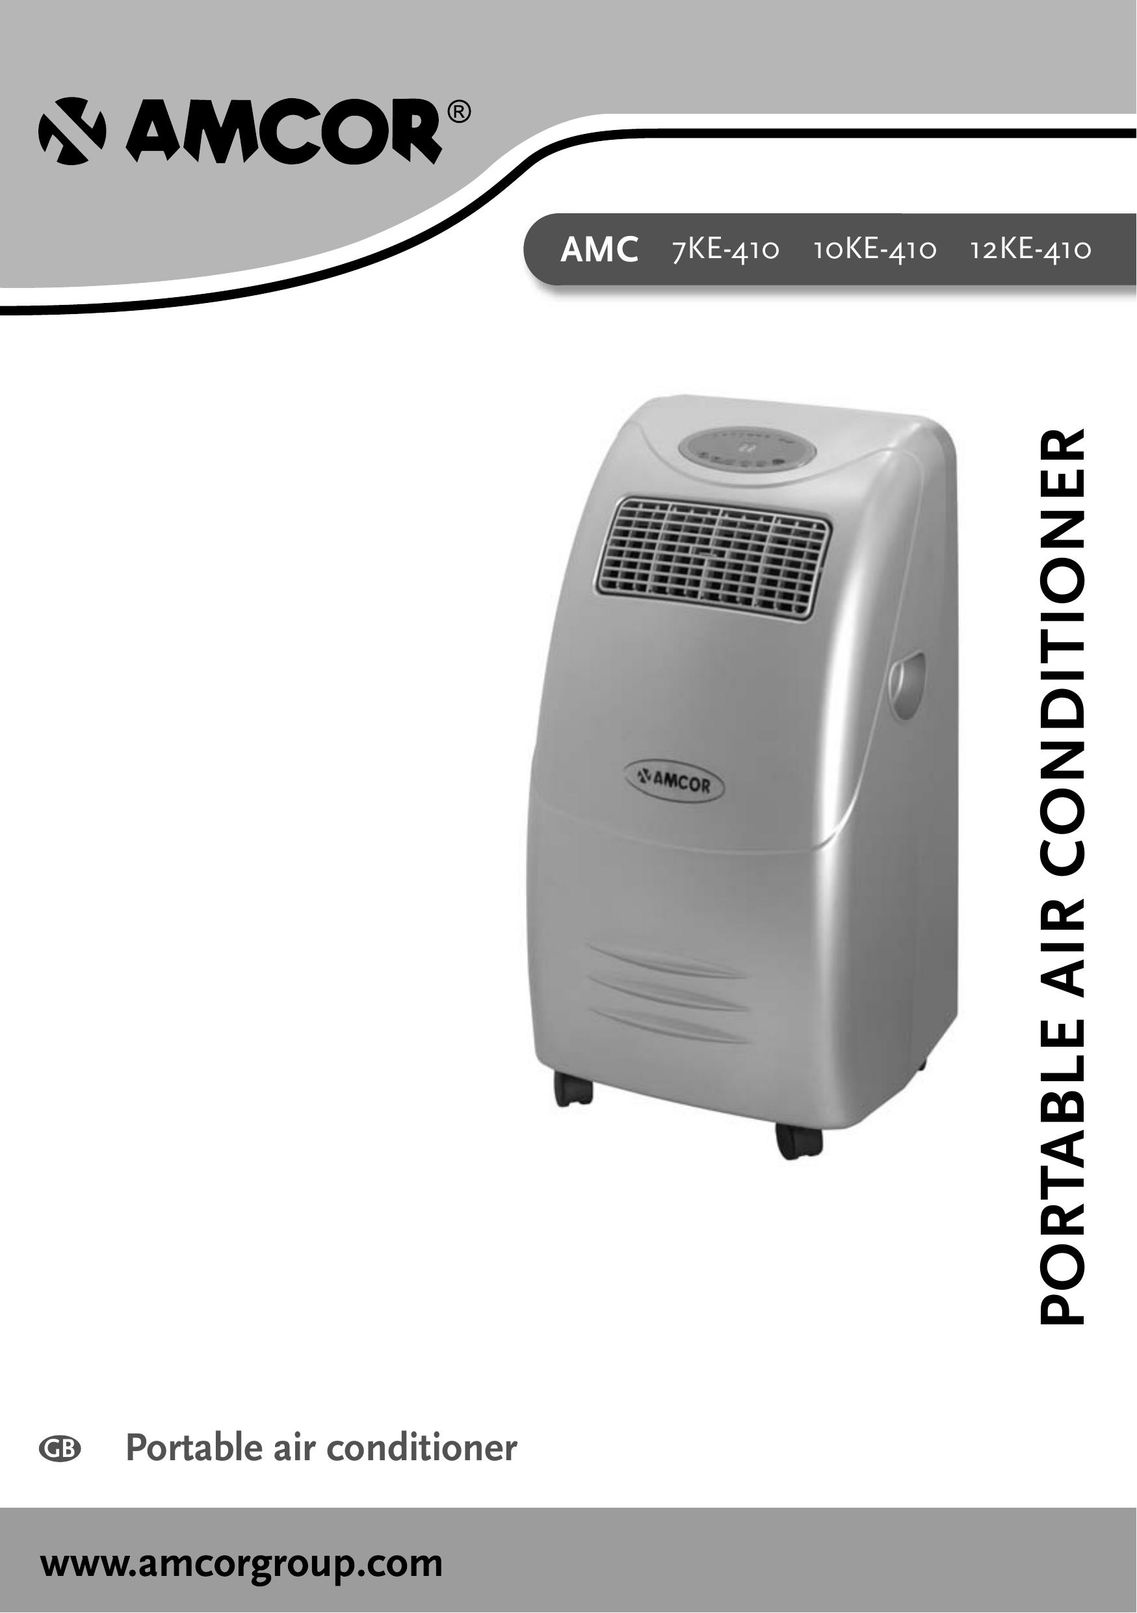 Amcor 12KE-410 Air Conditioner User Manual